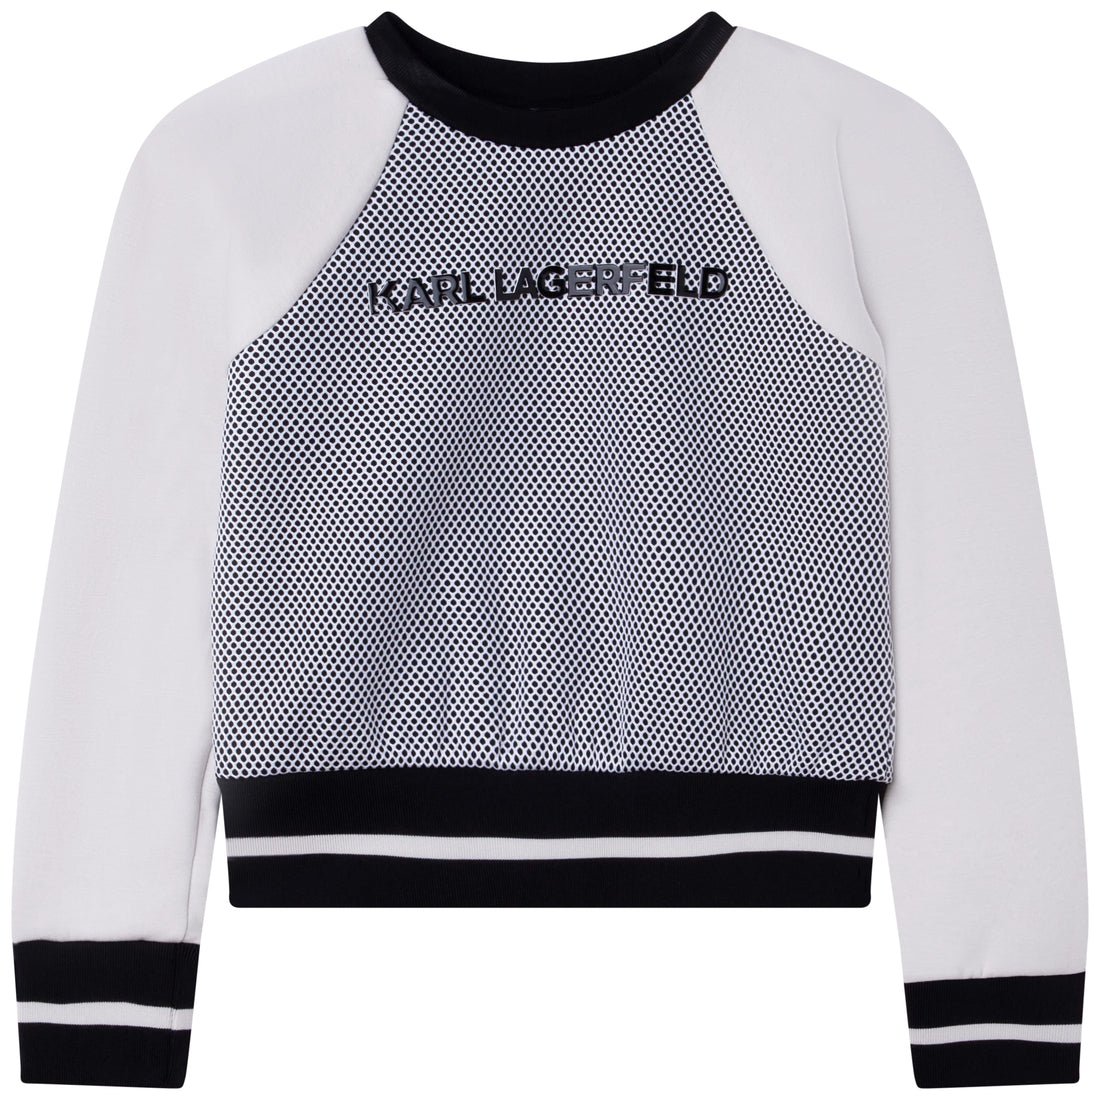 Karl Lagerfeld Kids Sweatshirt Style: Z15401